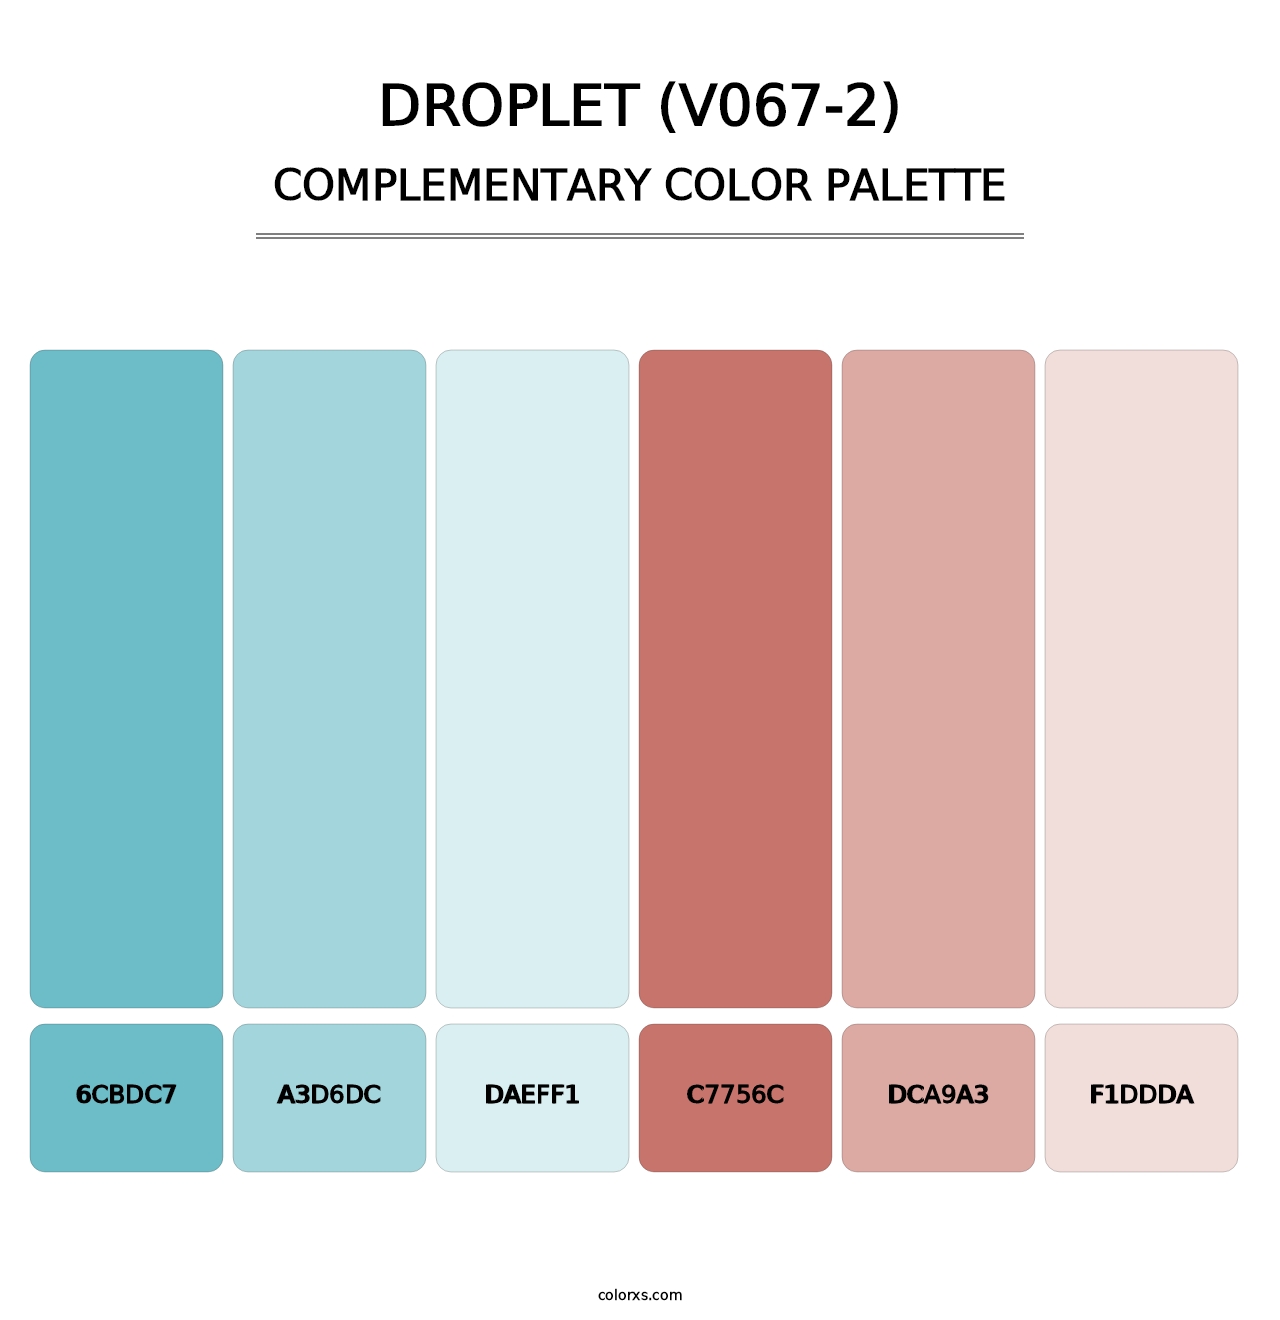 Droplet (V067-2) - Complementary Color Palette